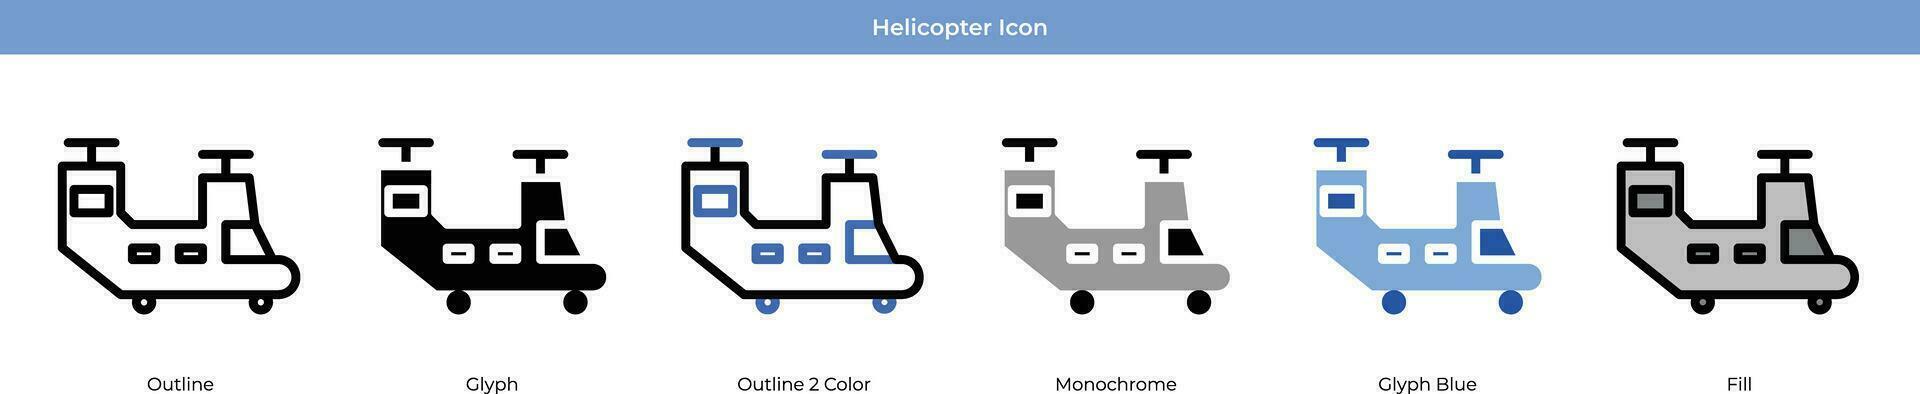 helicóptero ícone conjunto vetor